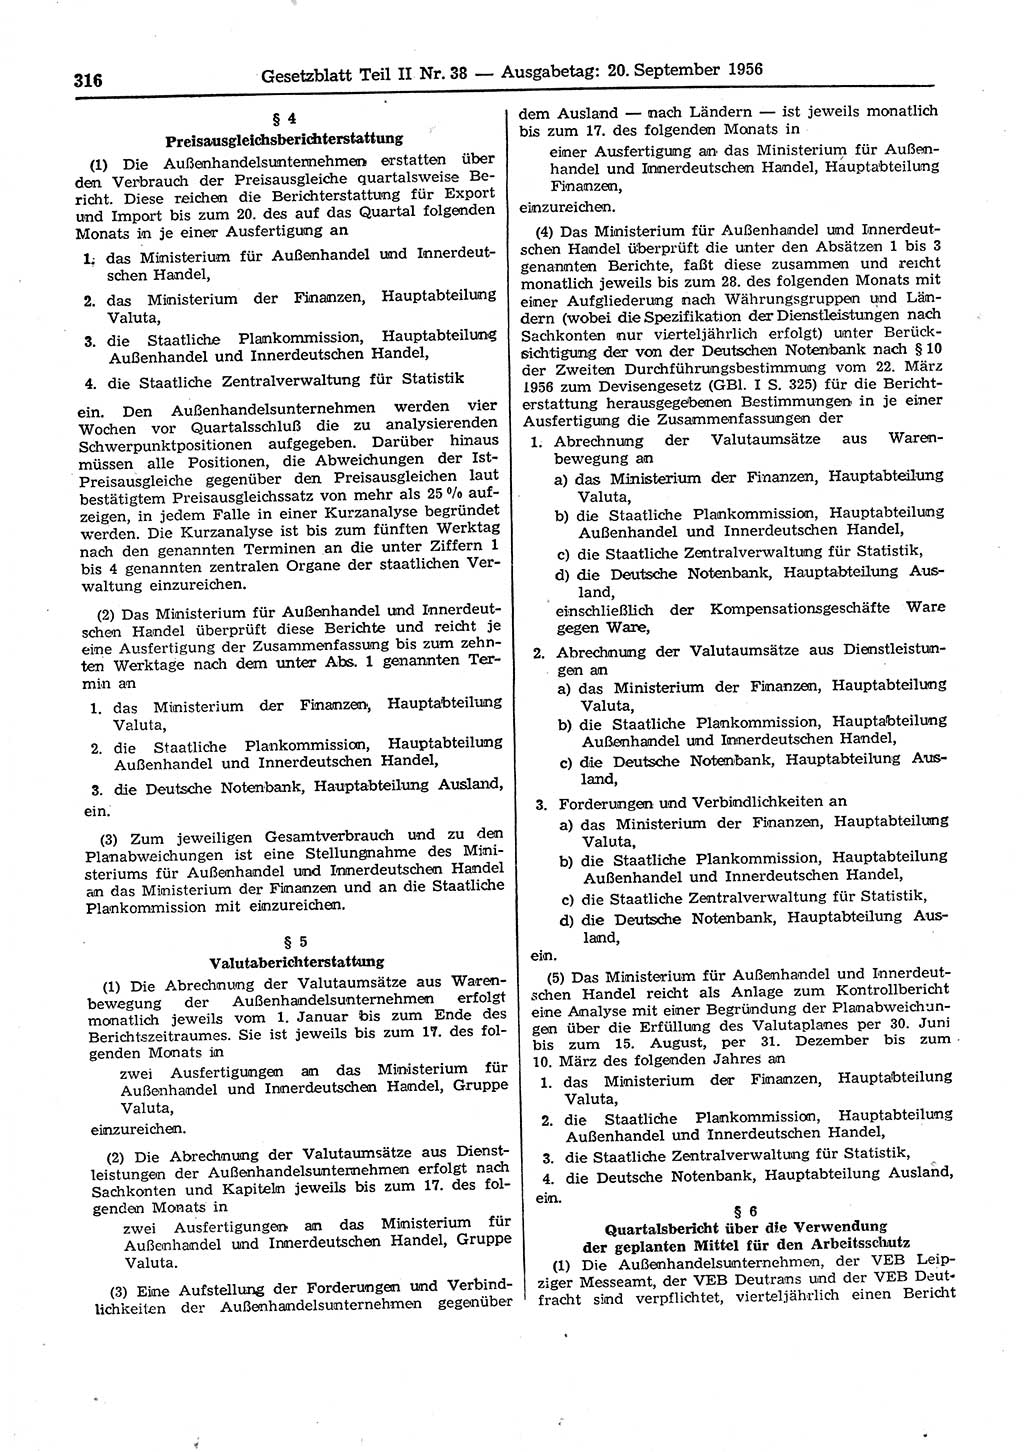 Gesetzblatt (GBl.) der Deutschen Demokratischen Republik (DDR) Teil ⅠⅠ 1956, Seite 316 (GBl. DDR ⅠⅠ 1956, S. 316)